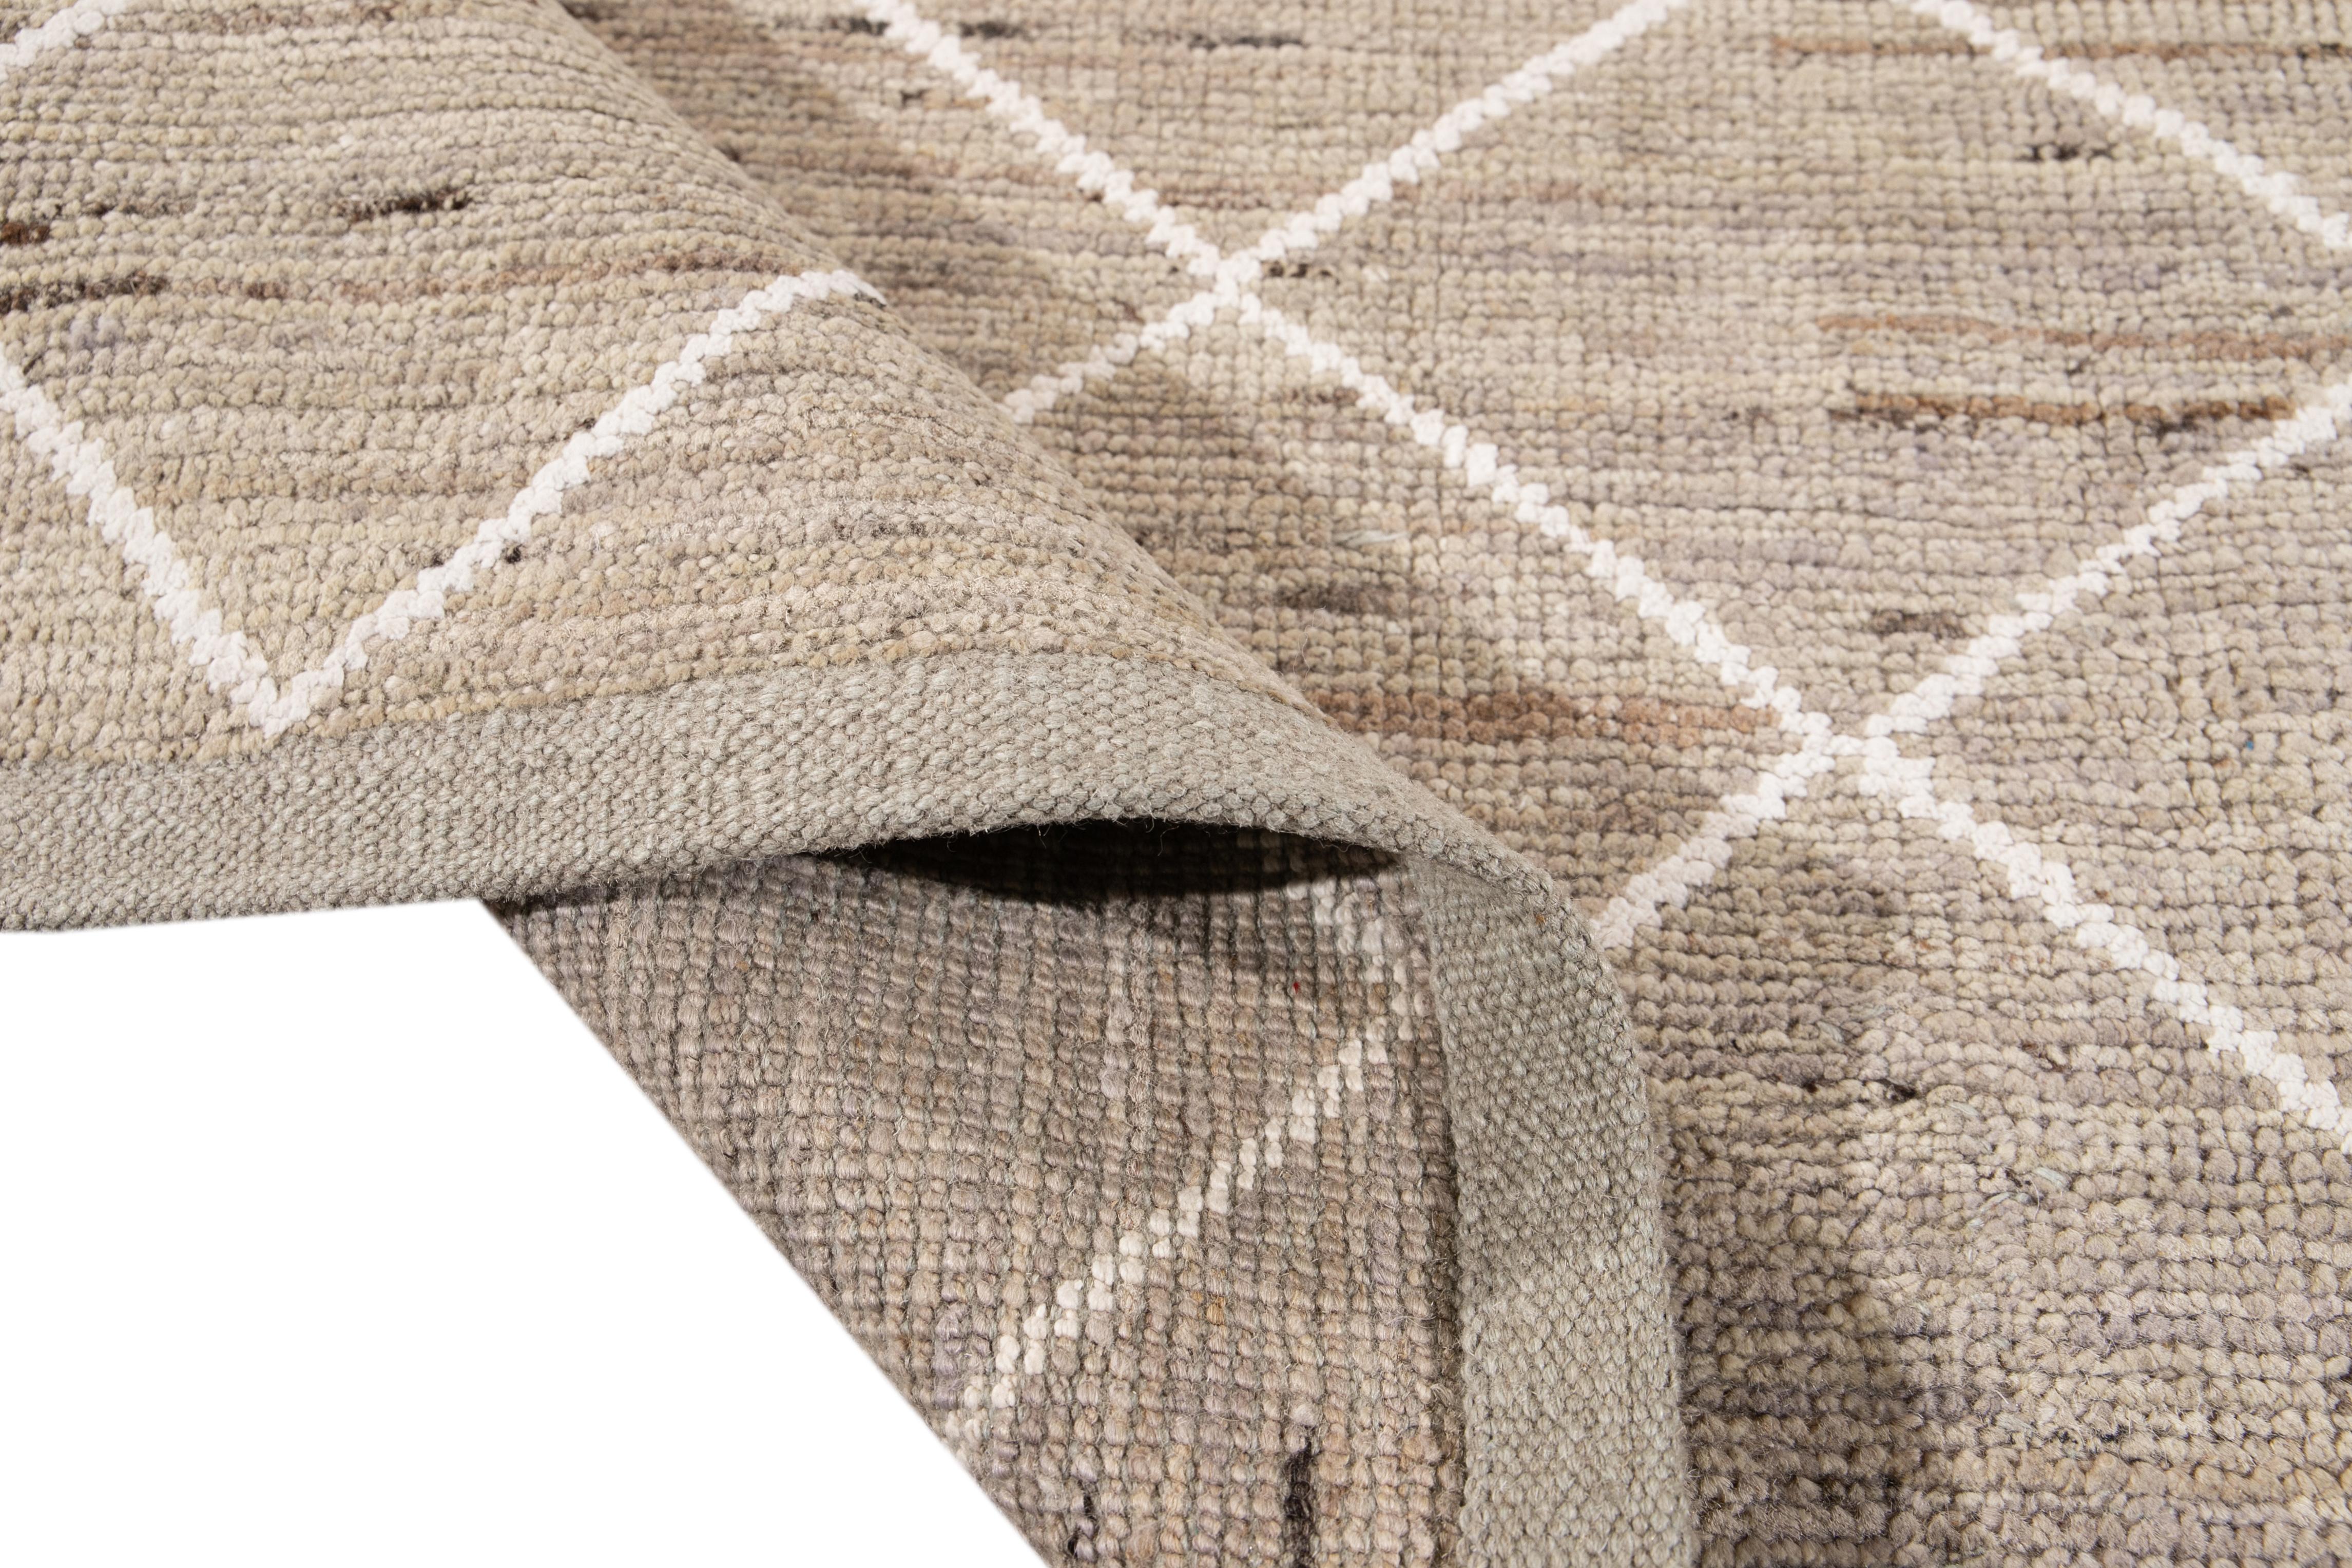 Magnifique tapis de style marocain en laine nouée à la main avec un champ beige. Ce tapis présente des accents de blanc dans un magnifique motif géométrique tribal.

Ce tapis mesure 8'2